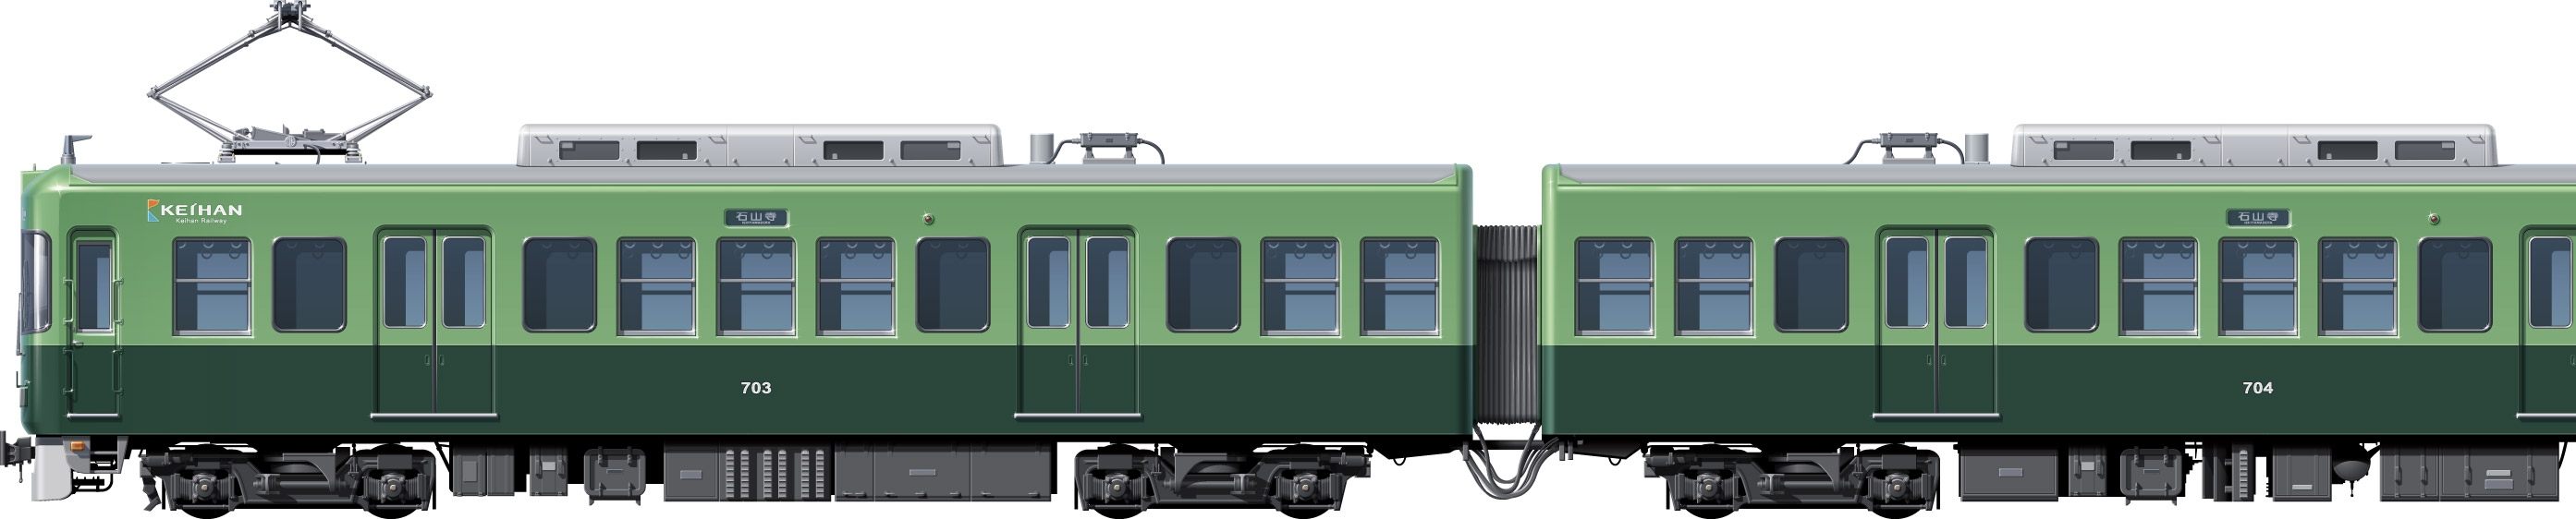 京阪 700系 3代目 サイドビューイラスト